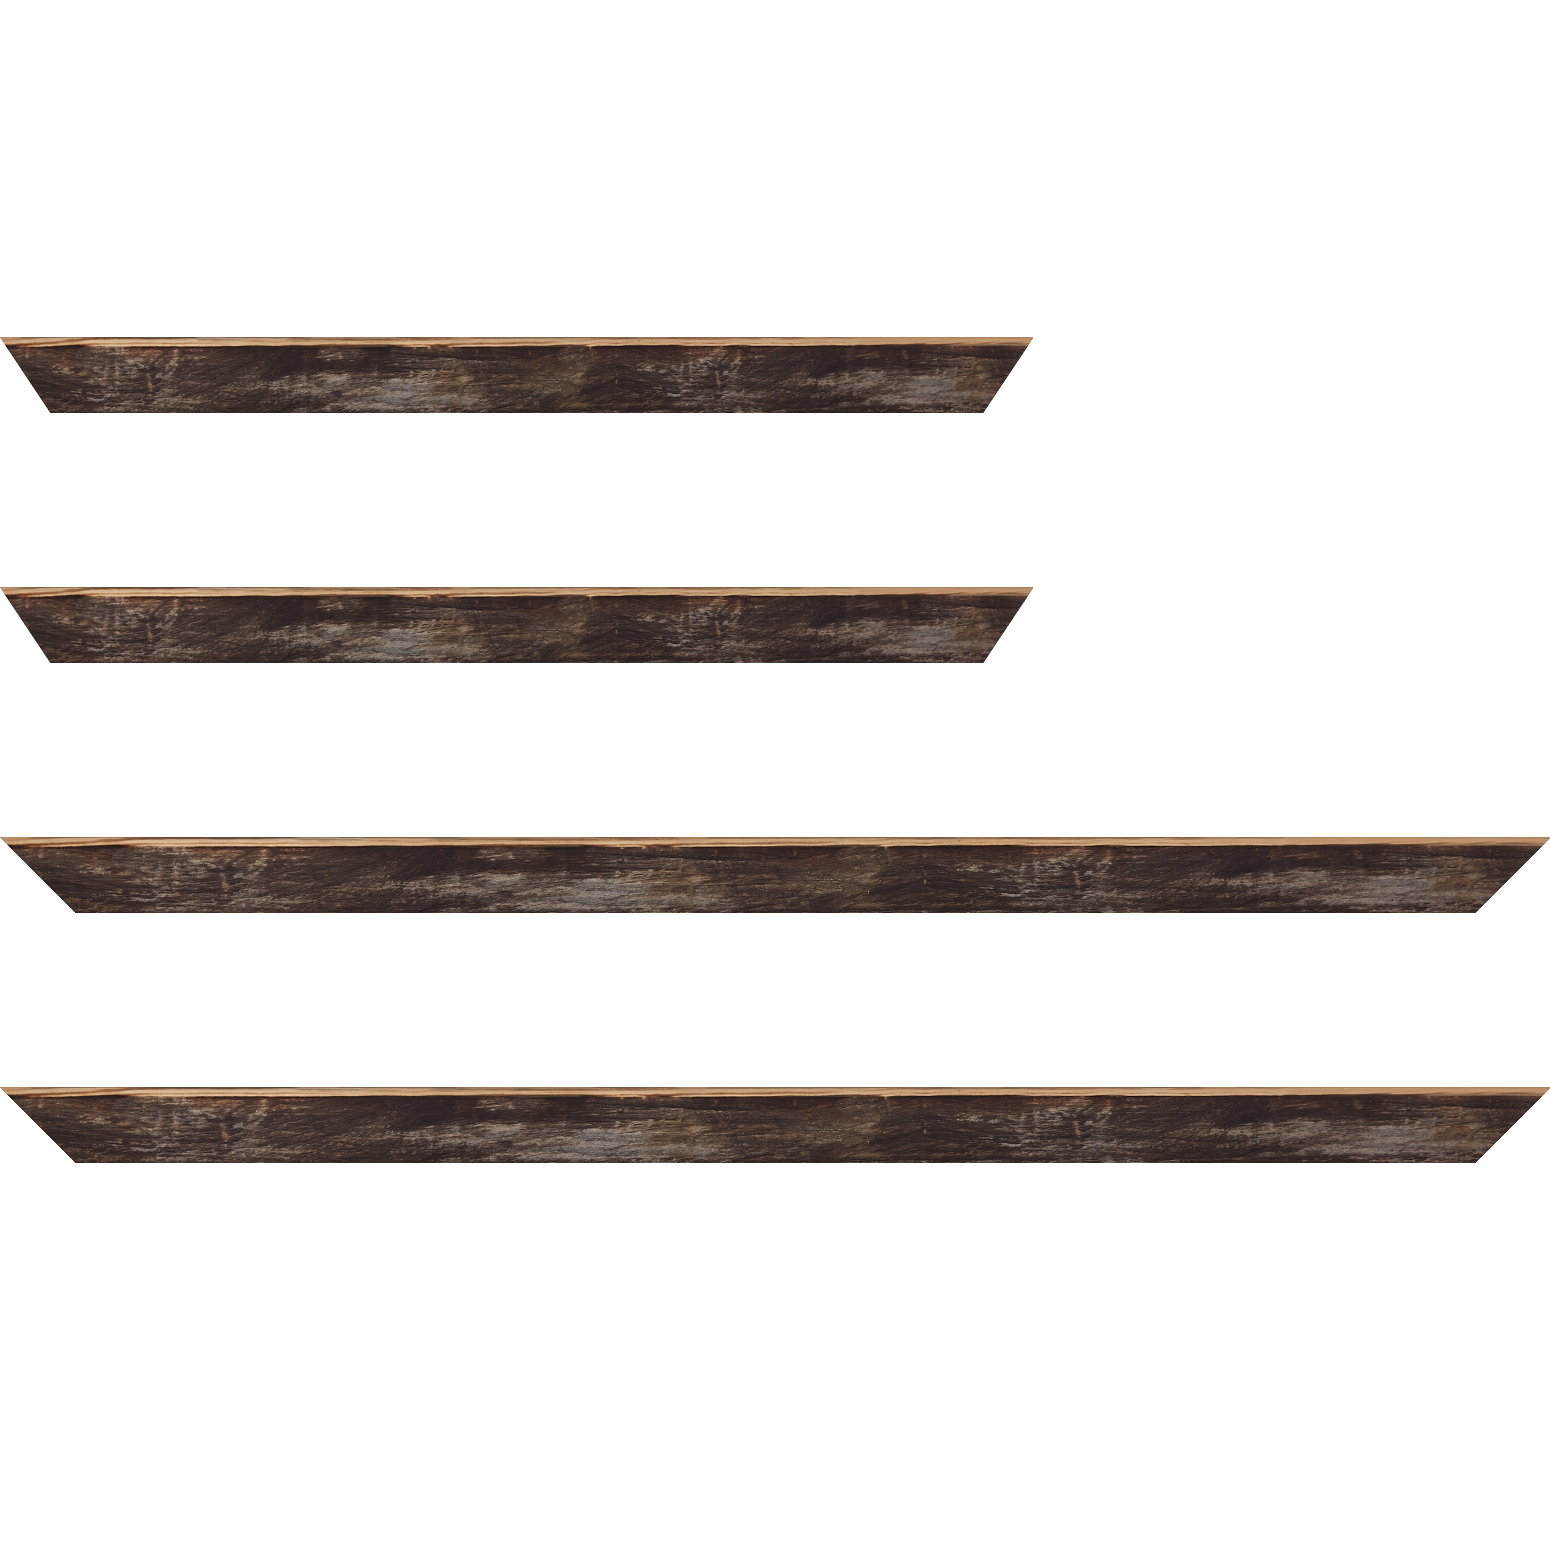 Baguette bois profil arrondi en pente plongeant largeur 2.4cm couleur noir ébène effet ressuyé, angle du cadre extérieur filet naturel - 34x40